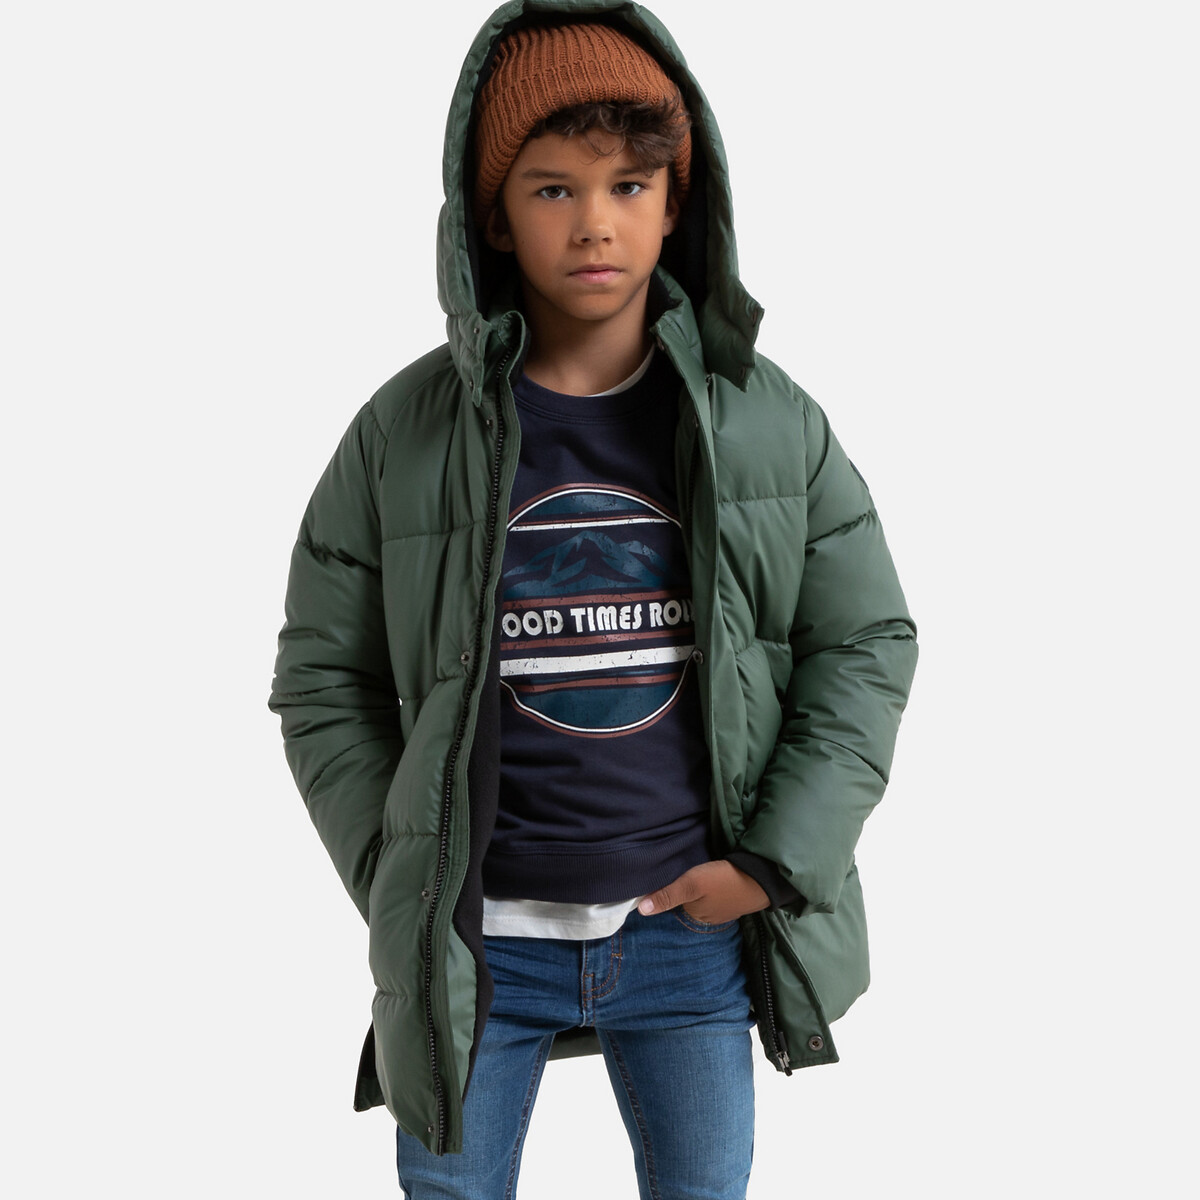 Куртка La Redoute Утепленная с капюшоном 3-12 лет 7 лет - 120 см зеленый, размер 7 лет - 120 см